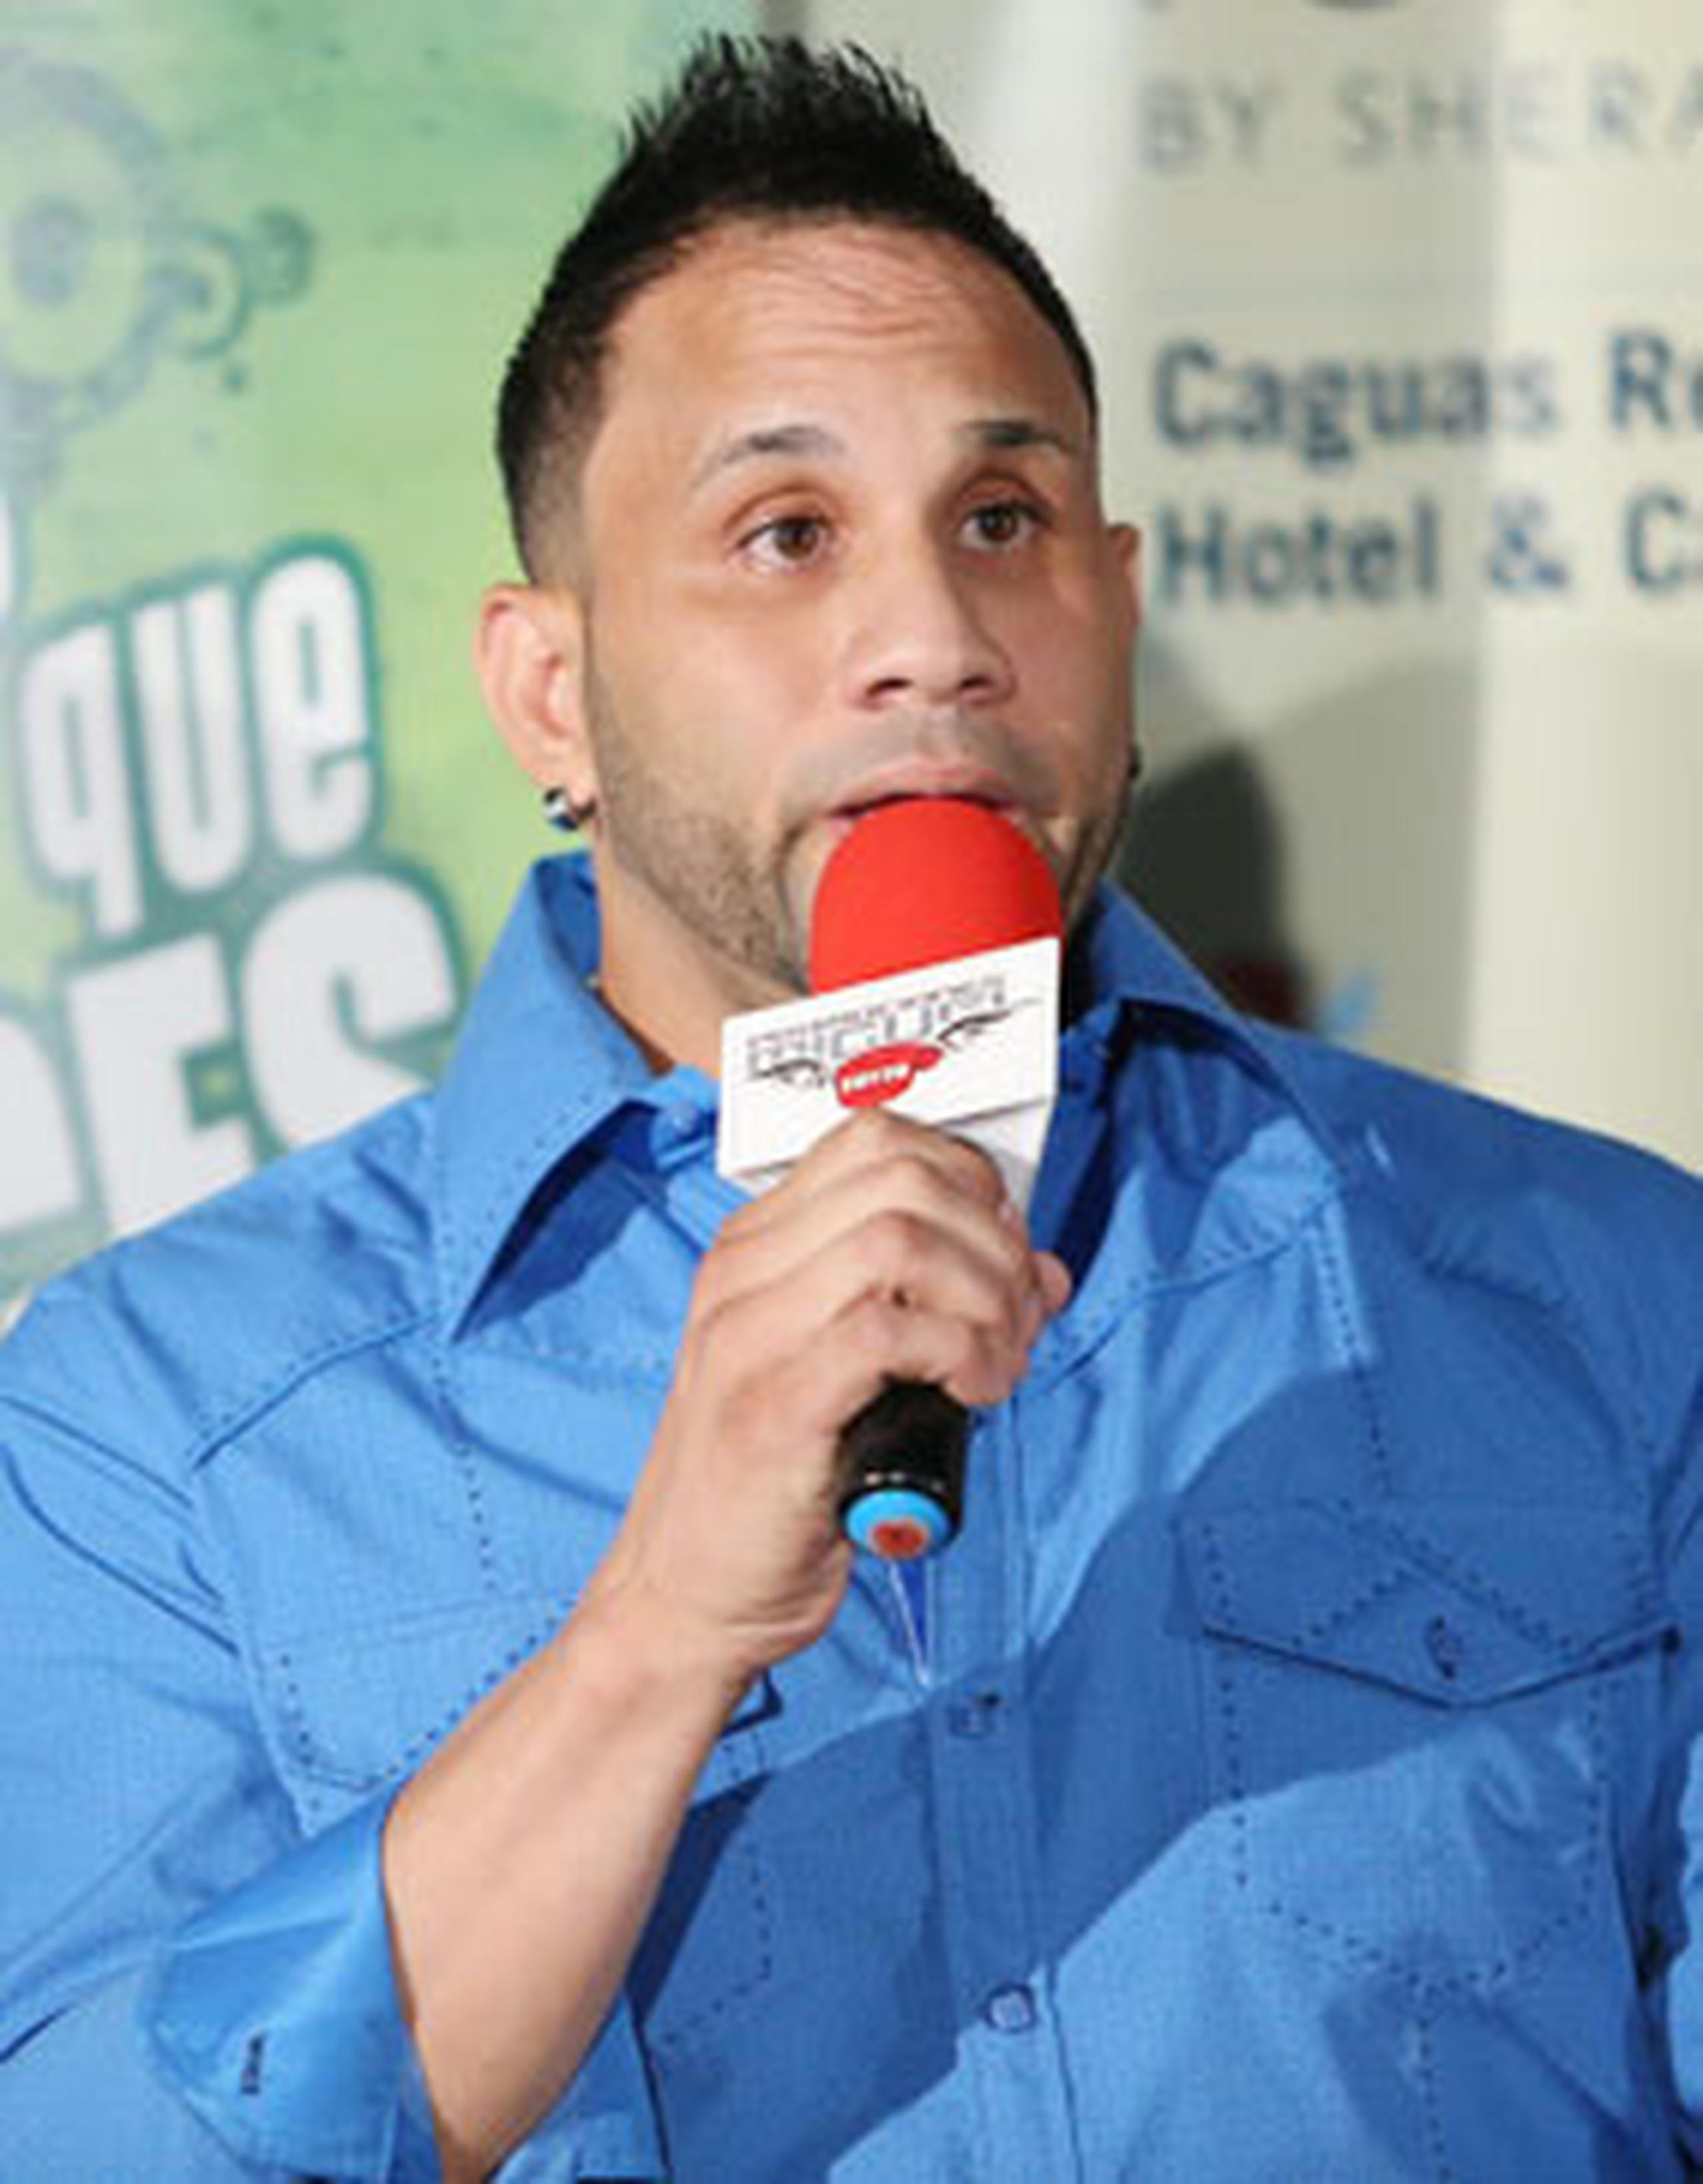 El luchador Carlos Cotto, conocido como “el Chicano”, debutará en Christmas X-plosion. (angel.rivera@gfrmedia.com)